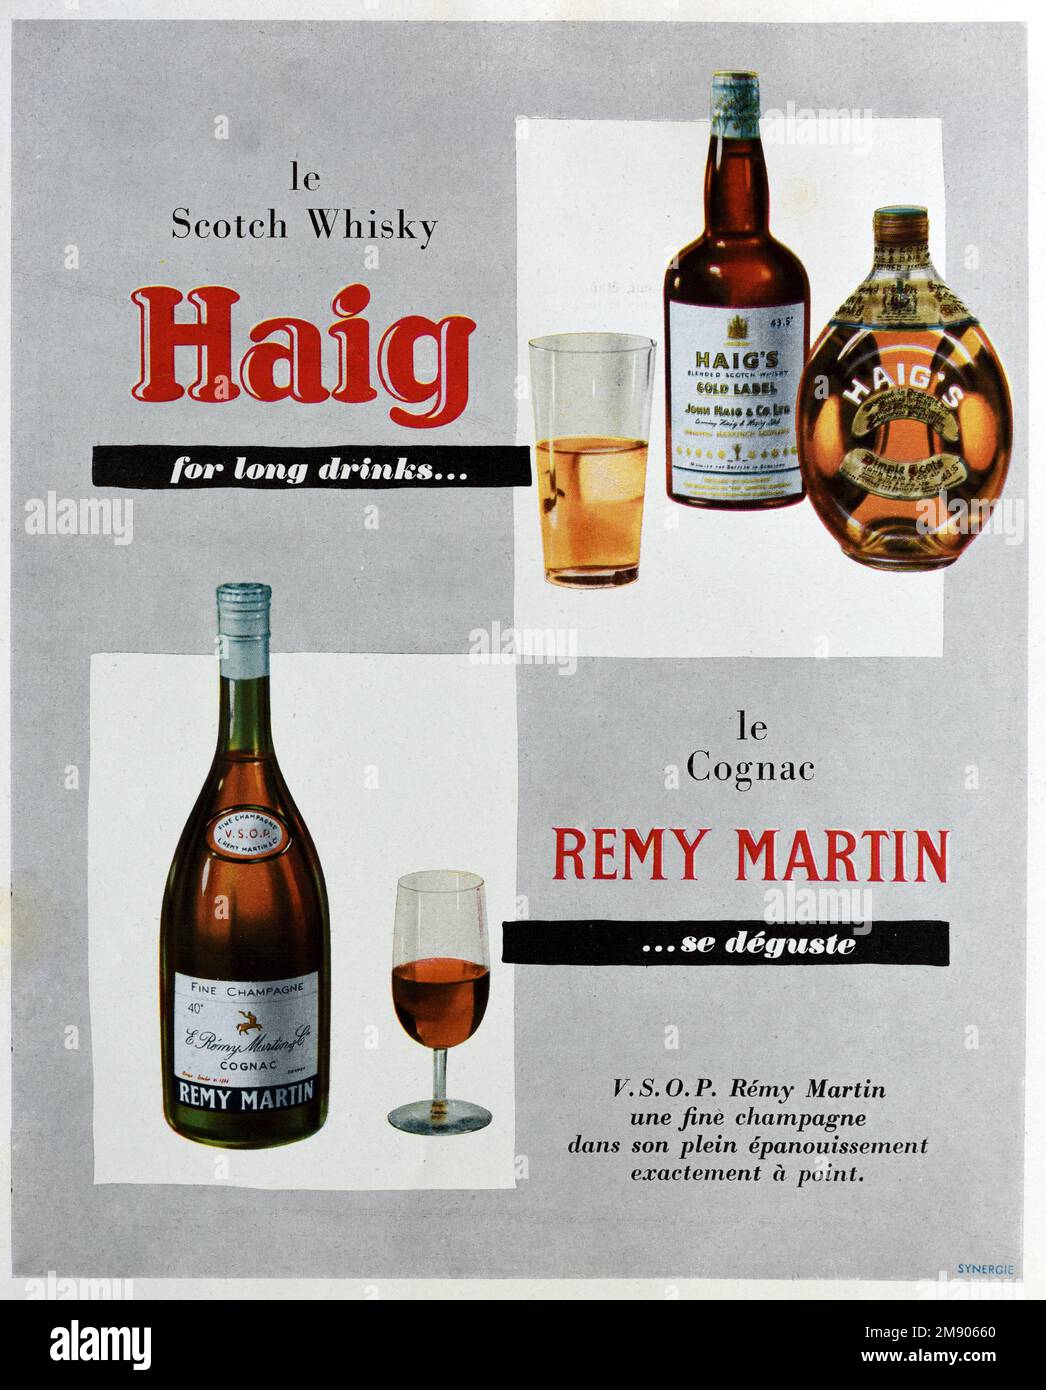 Vintage o antiguo anuncio, publicidad, publicidad o ilustración para Bottle of.Haig whisky escocés. Anuncio 1956 Foto de stock